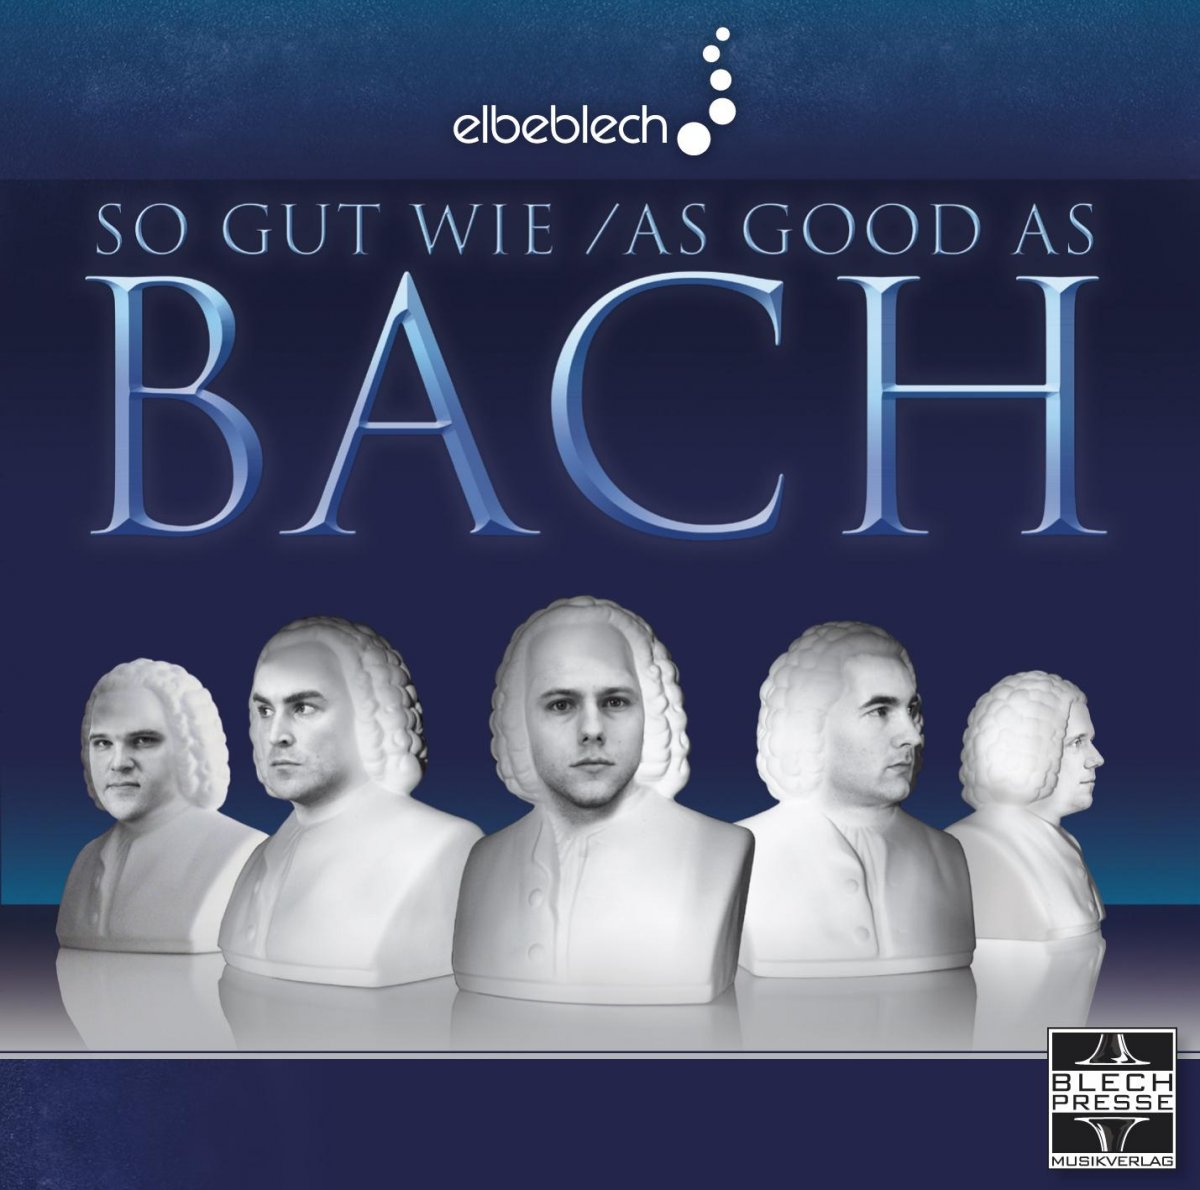 So gut wie Bach / As good as Bach - clicca qui